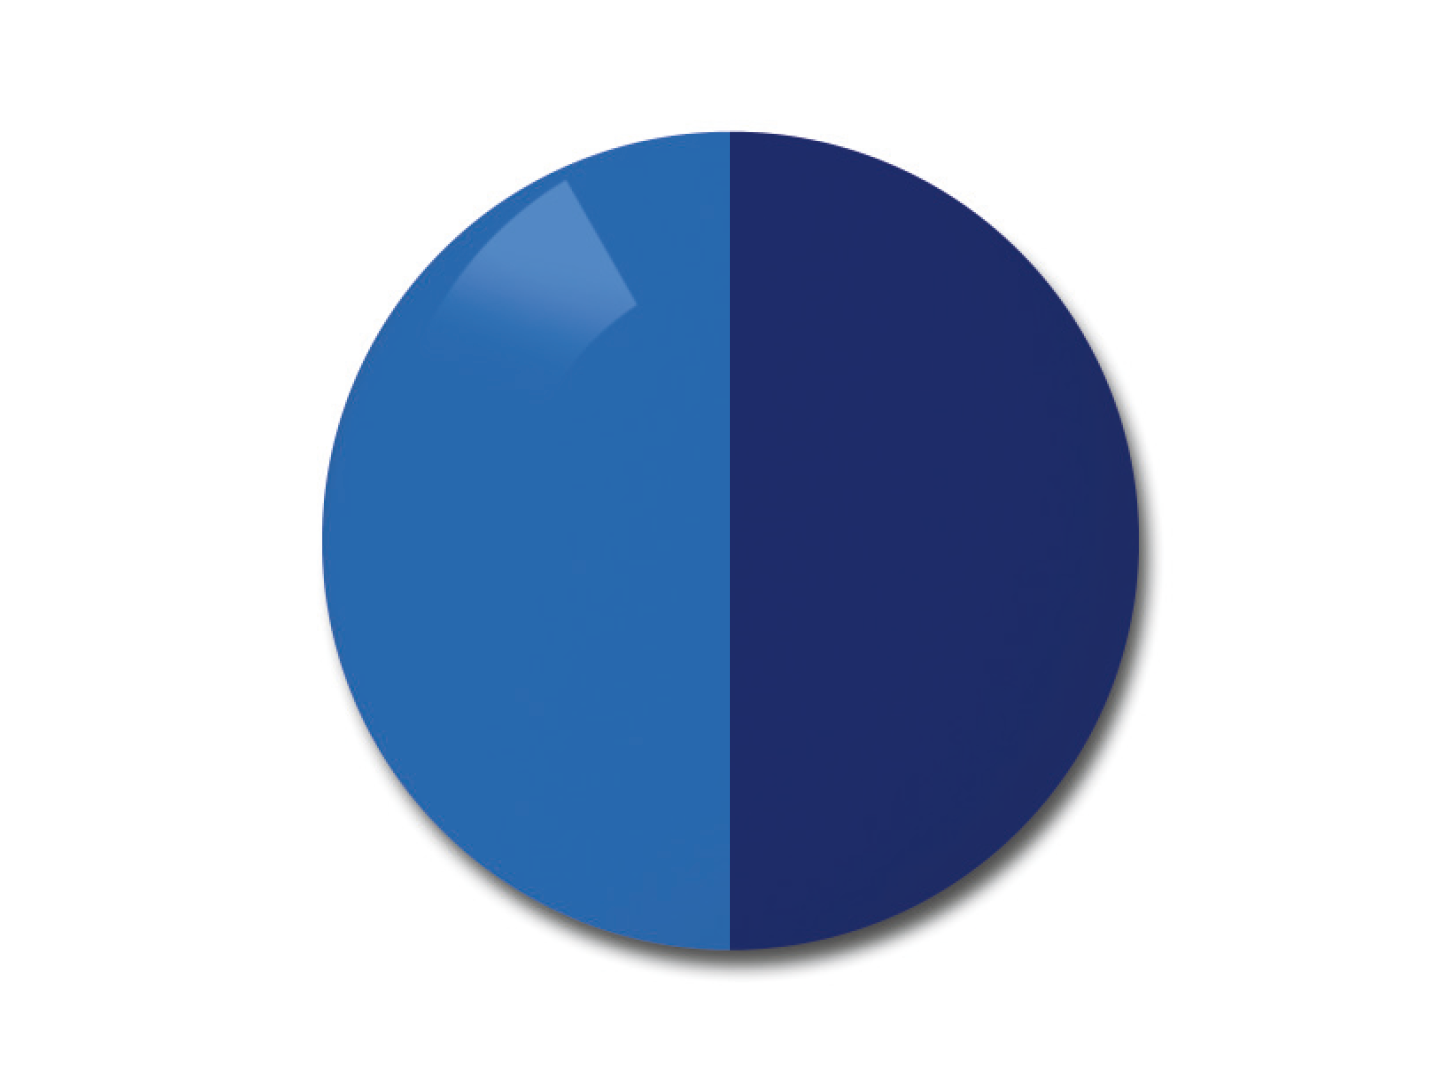 자이스 어댑티브선 변색 렌즈 중 단색 블루 컬러를 보여주는 이미지 